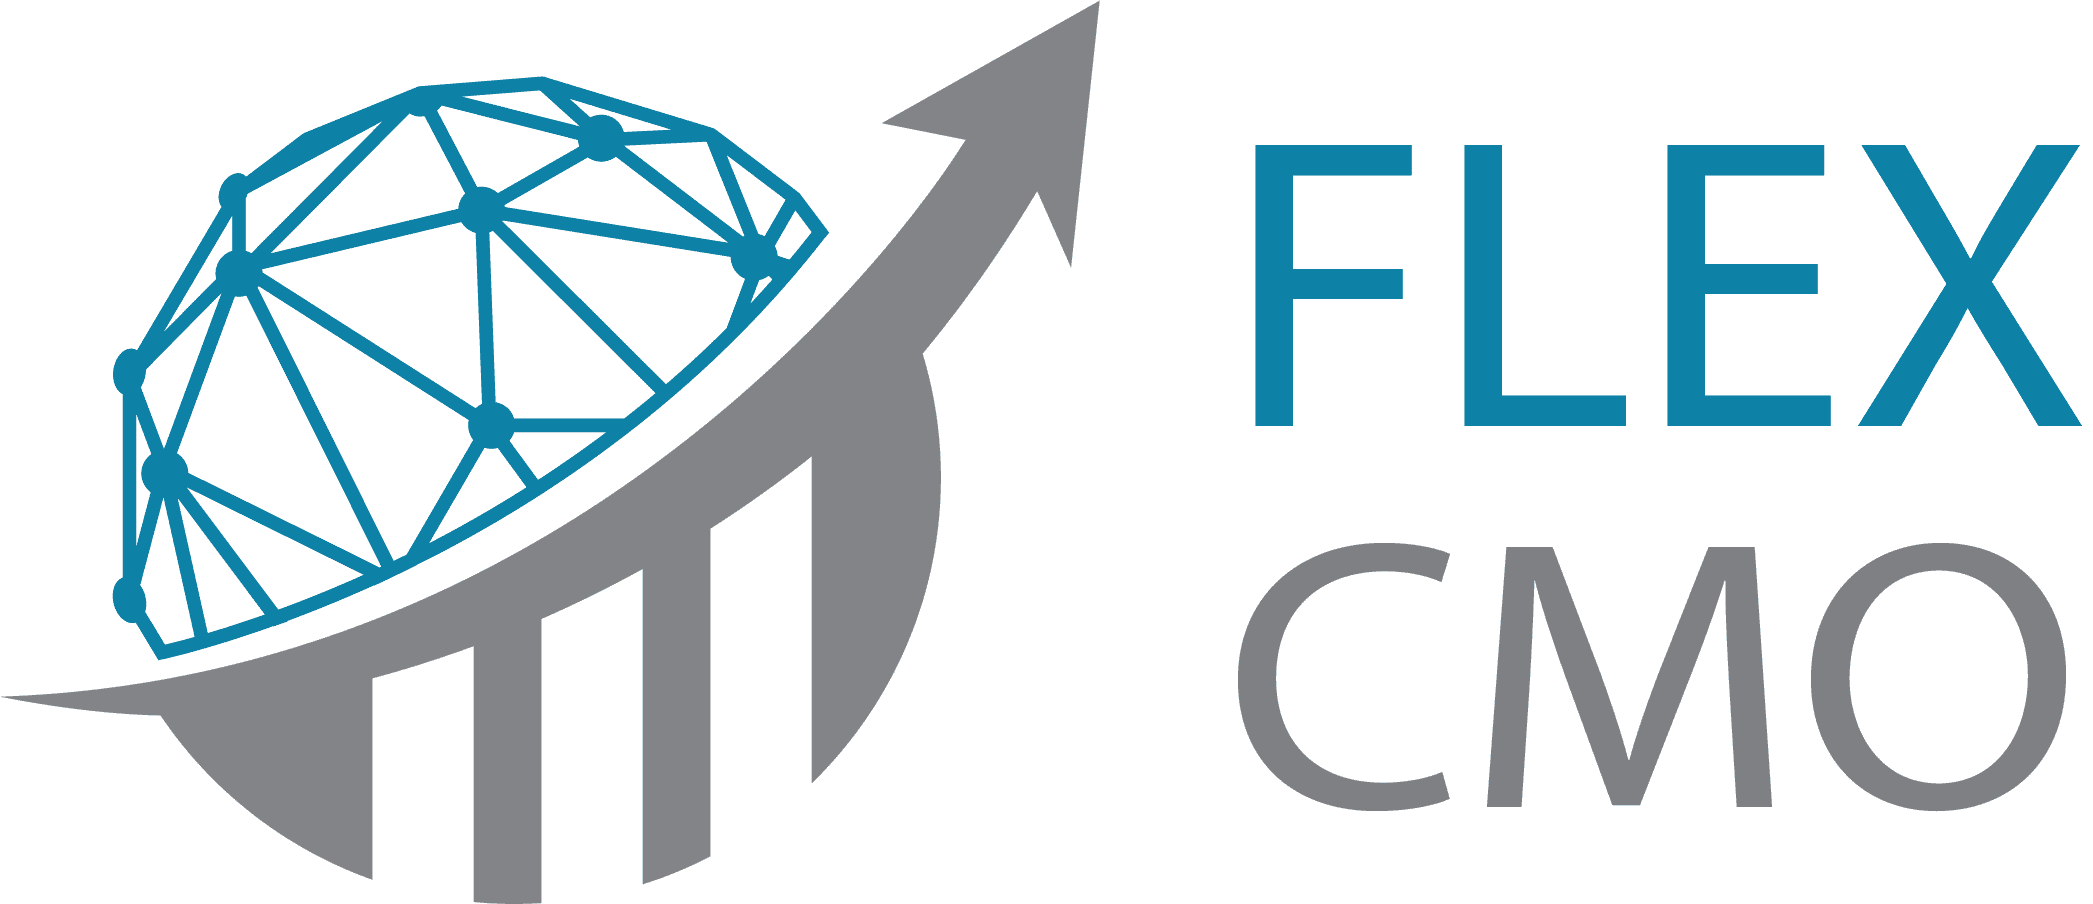 Flex CMO Logo de Flex CMO affichant un globe bleu stylisé avec une flèche montante incorporée à la lettre "M" sur fond vert.